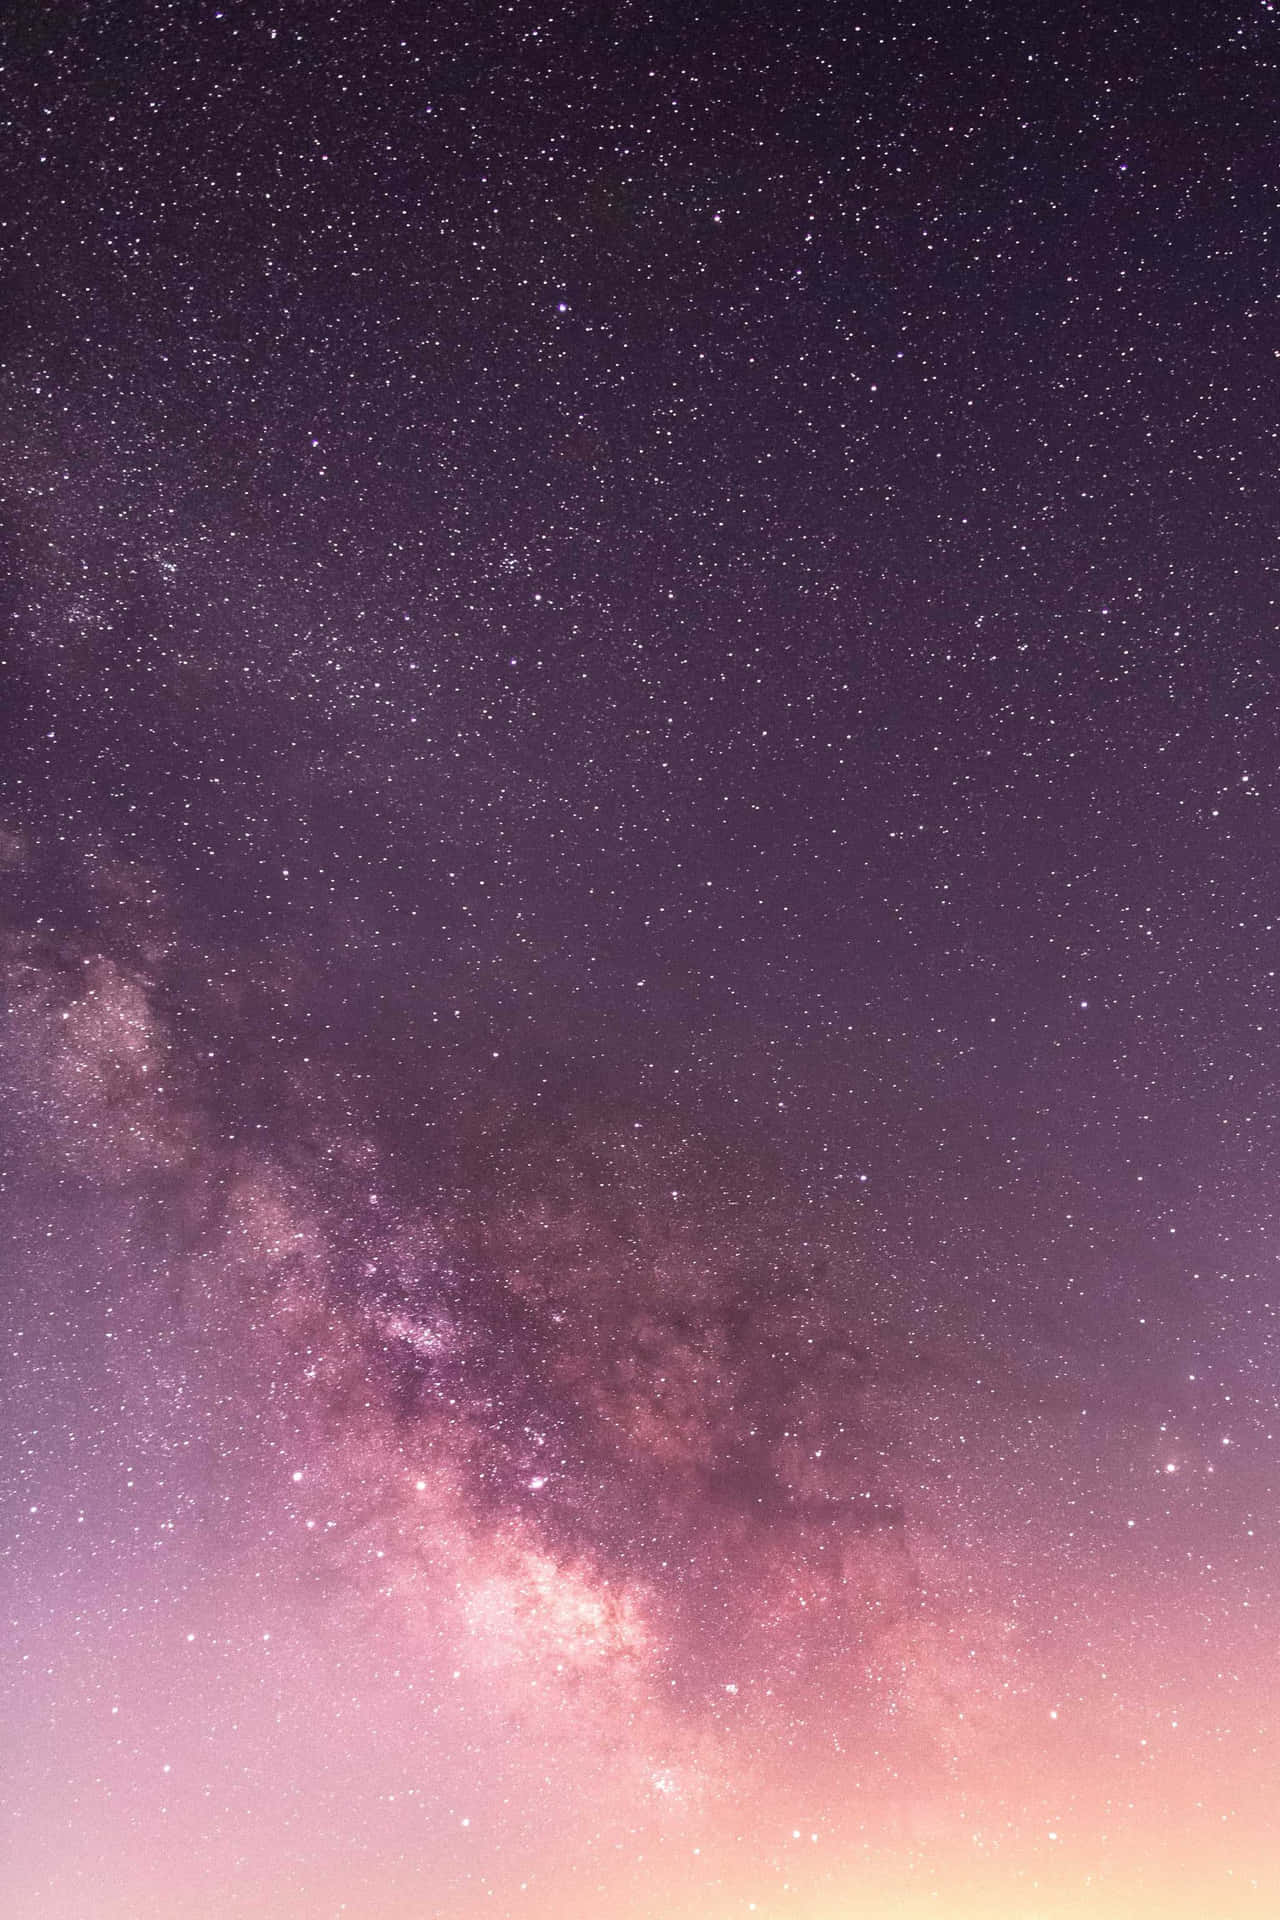 Njutav Skönheten I Nattens Stjärnhimmel Med Denna Mån- Och Stjärntema Iphone-bakgrundsbild. Wallpaper